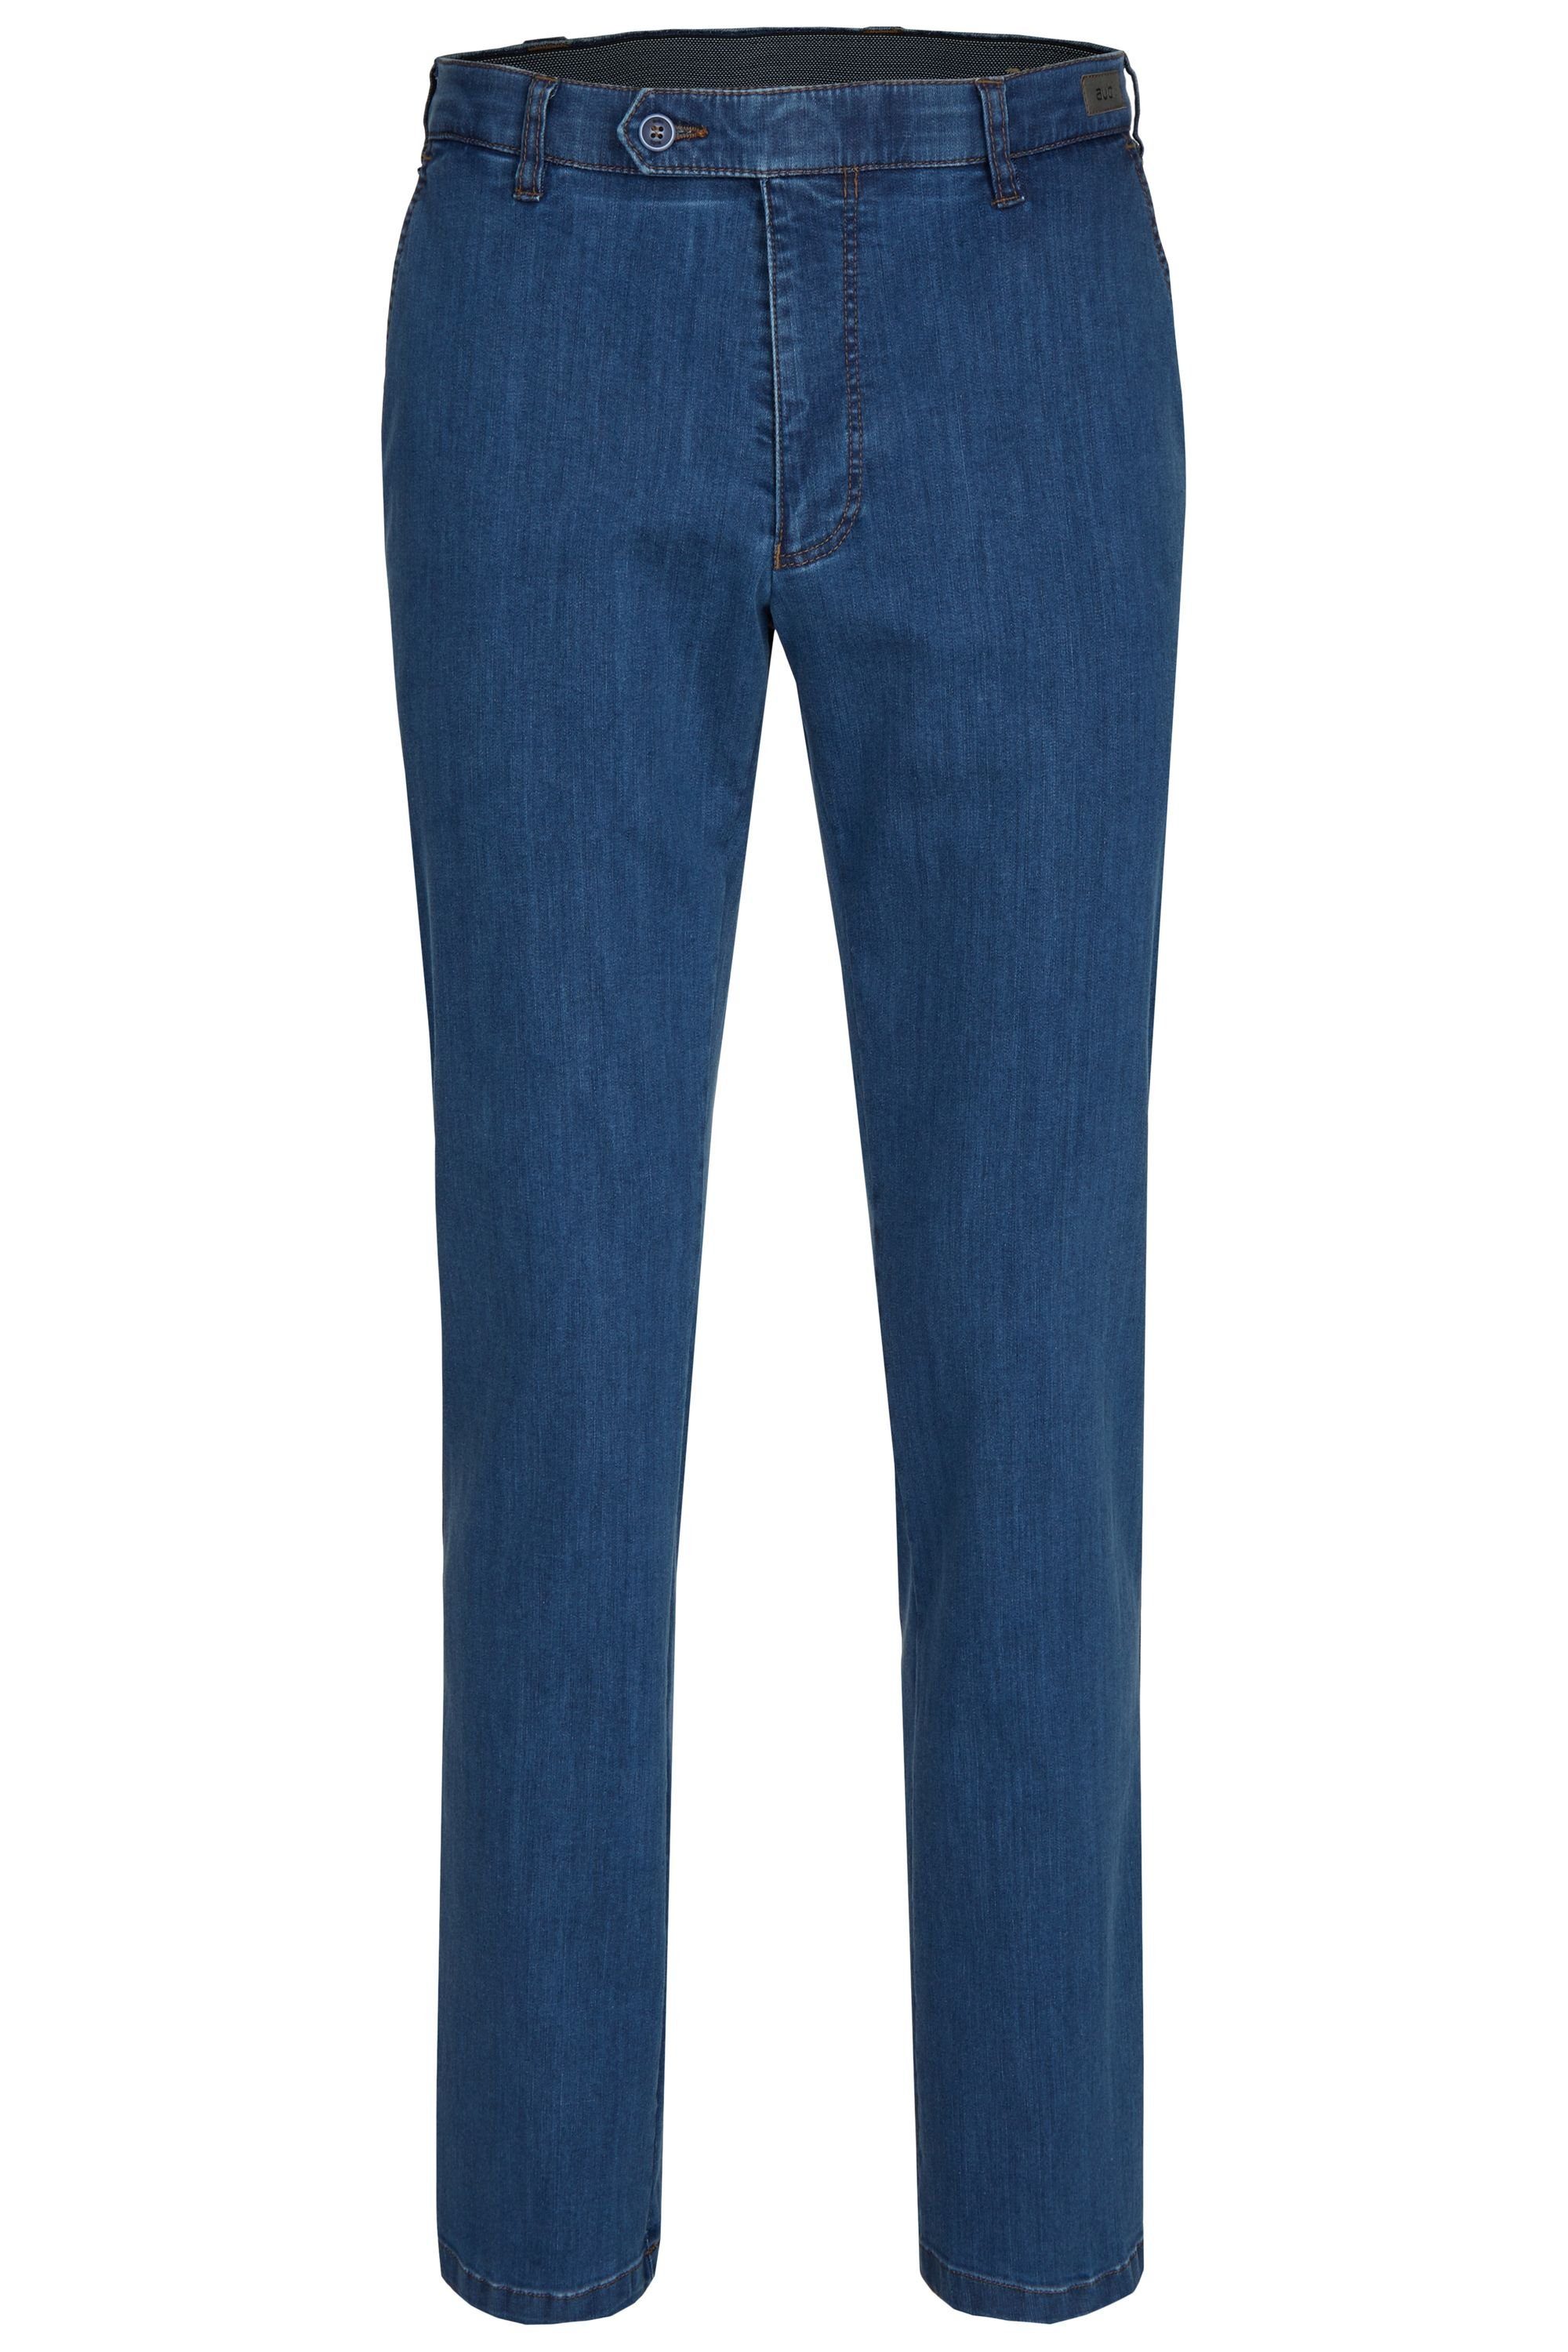 aubi: Bequeme Jeans aubi Perfect Fit Herren Sommer Jeans Hose Stretch aus Baumwolle High Flex Modell 526 stone (46)